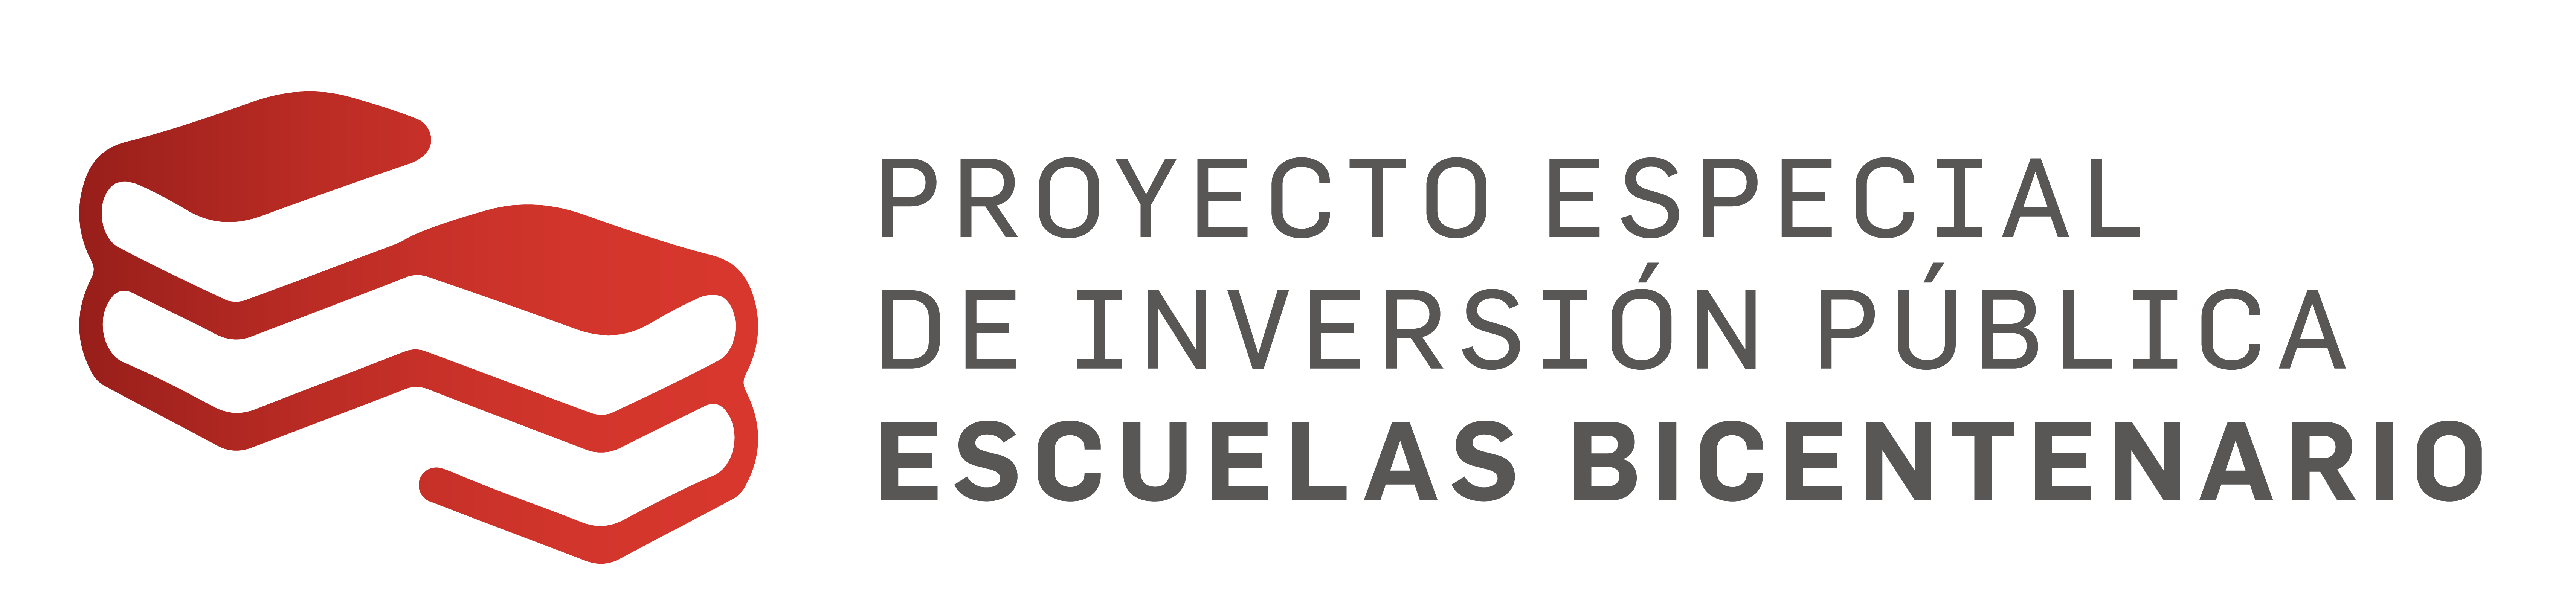 PROYECTO ESPECIAL DE INVERSIÓN PUBLICA